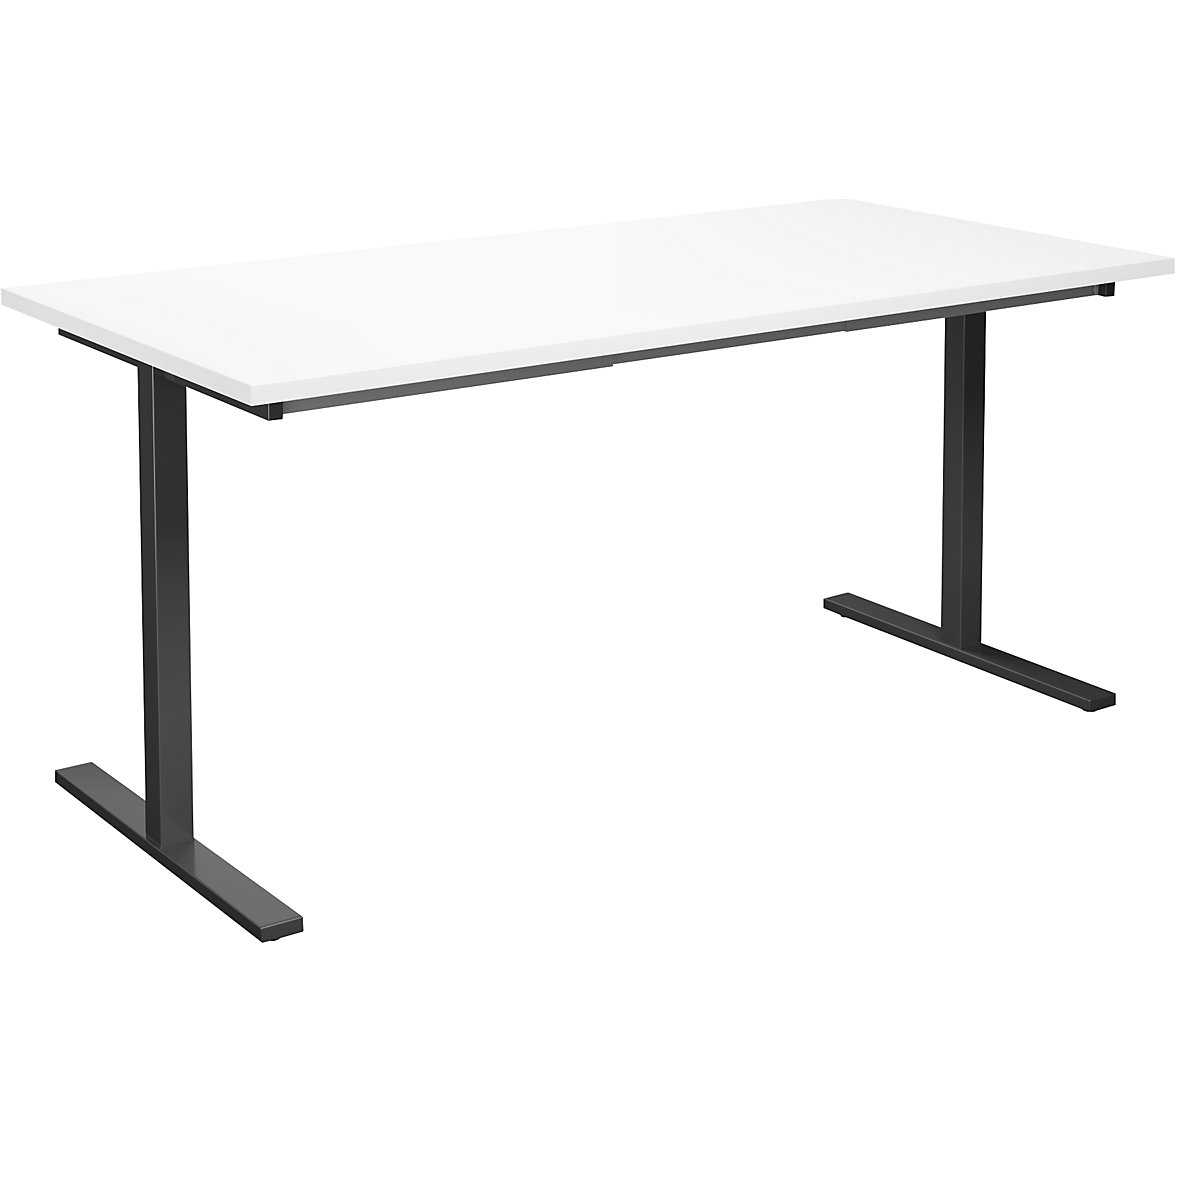 DUO-T multi-purpose desk, straight tabletop, WxD 1600 x 800 mm, white, black-4